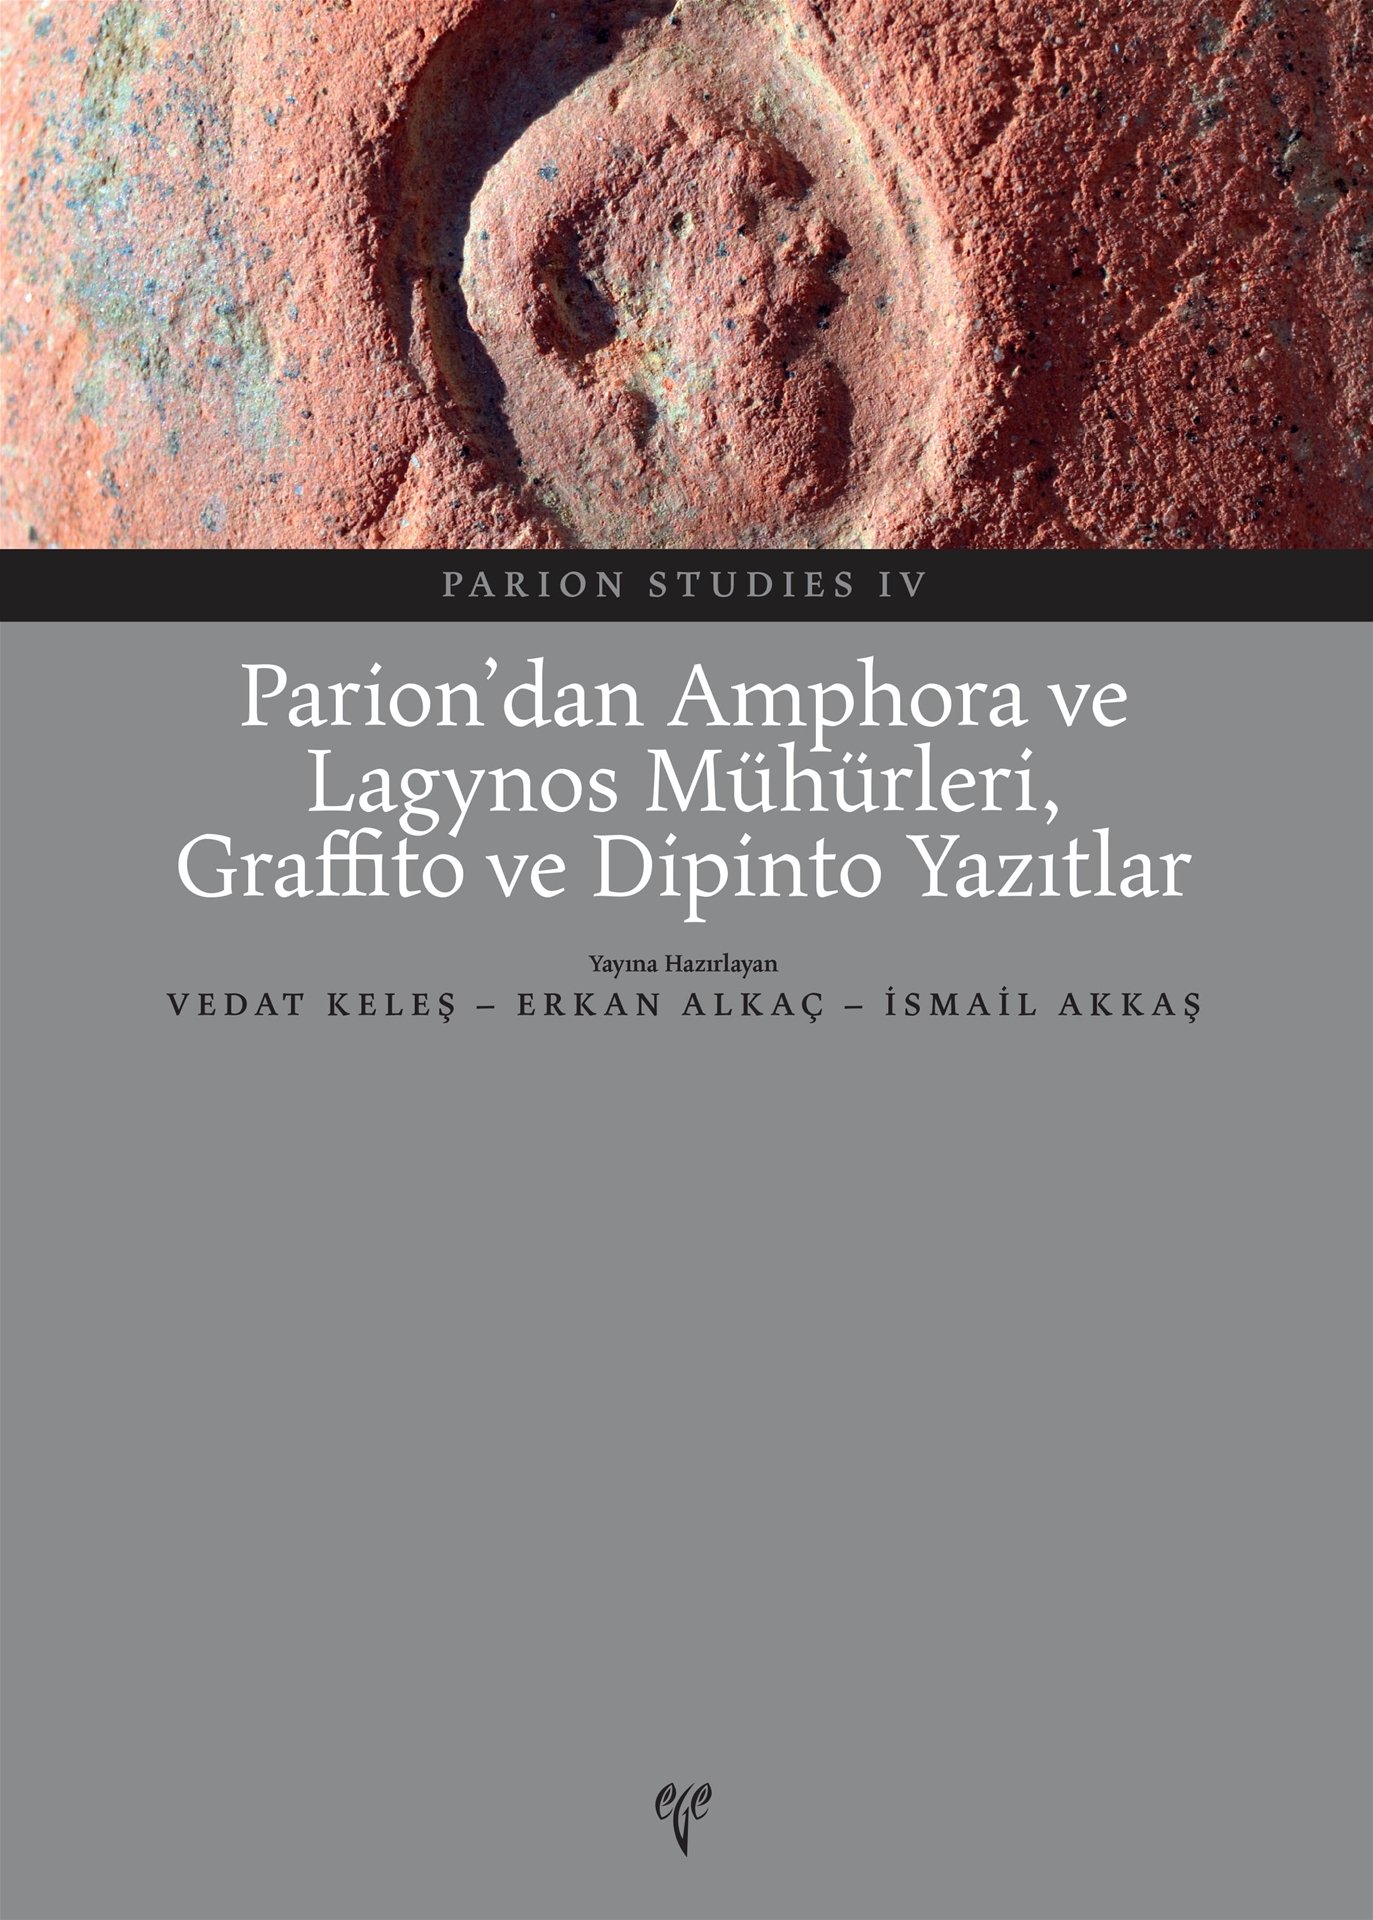 Keleş, Vedat – Erkan Alkaç – İsmail Akkaş (eds.) : Parion'dan Amphora ve Lagynos Mühürleri, Graffito ve Dipinto Yazıtlar